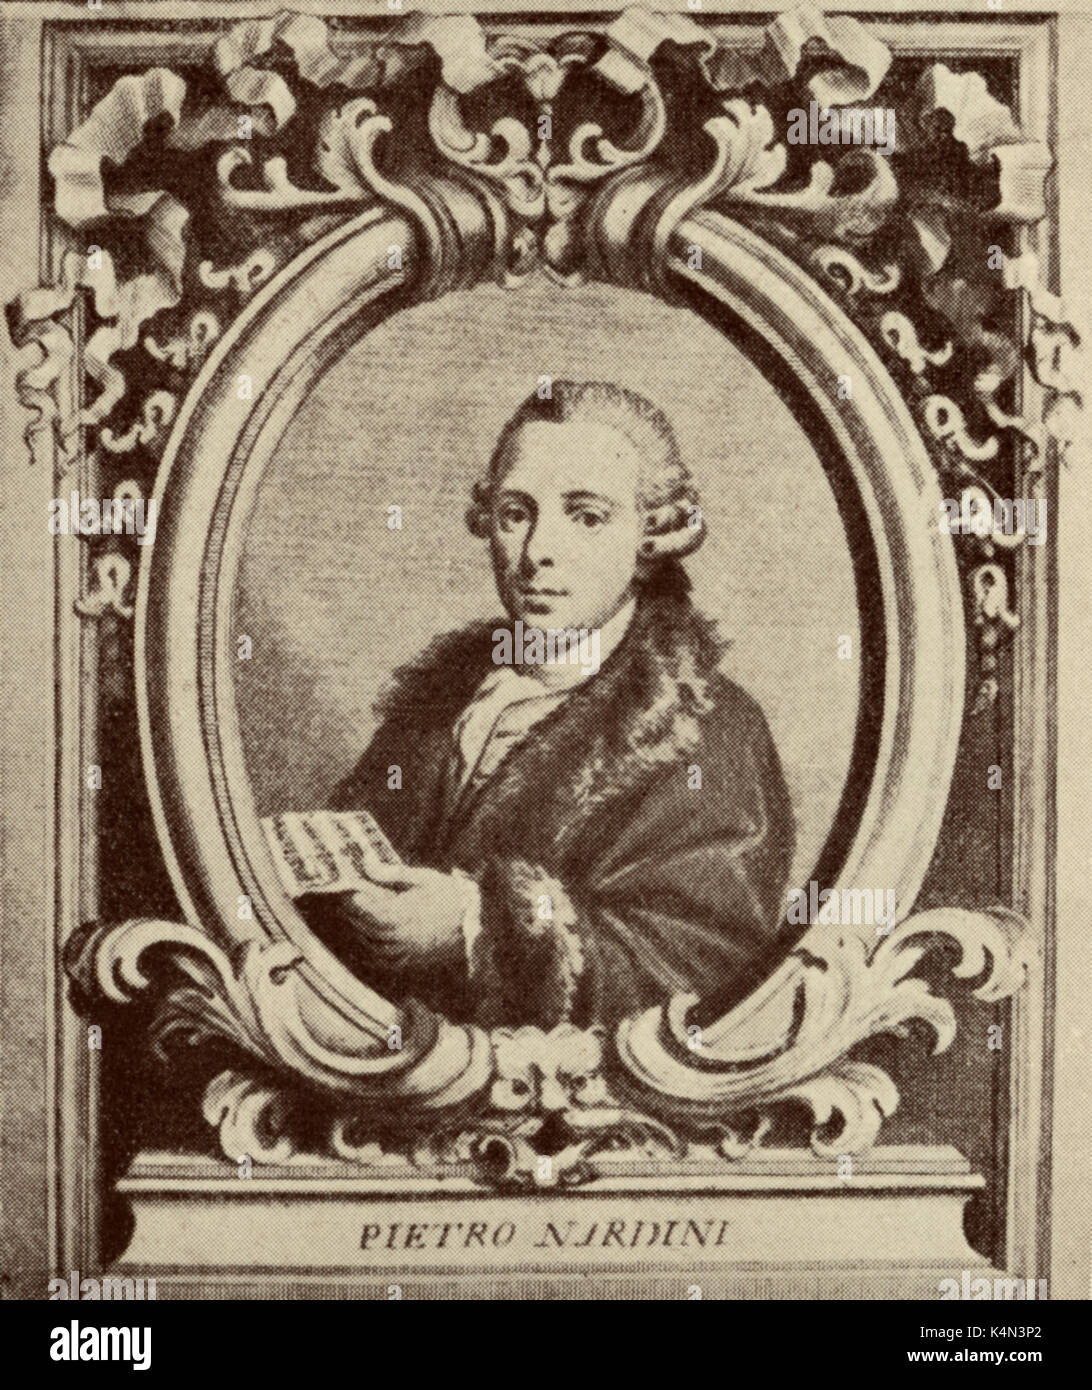 NARDINI, Pietro. Italienischer Violinist und Komponist, 1722-1793 Stockfoto